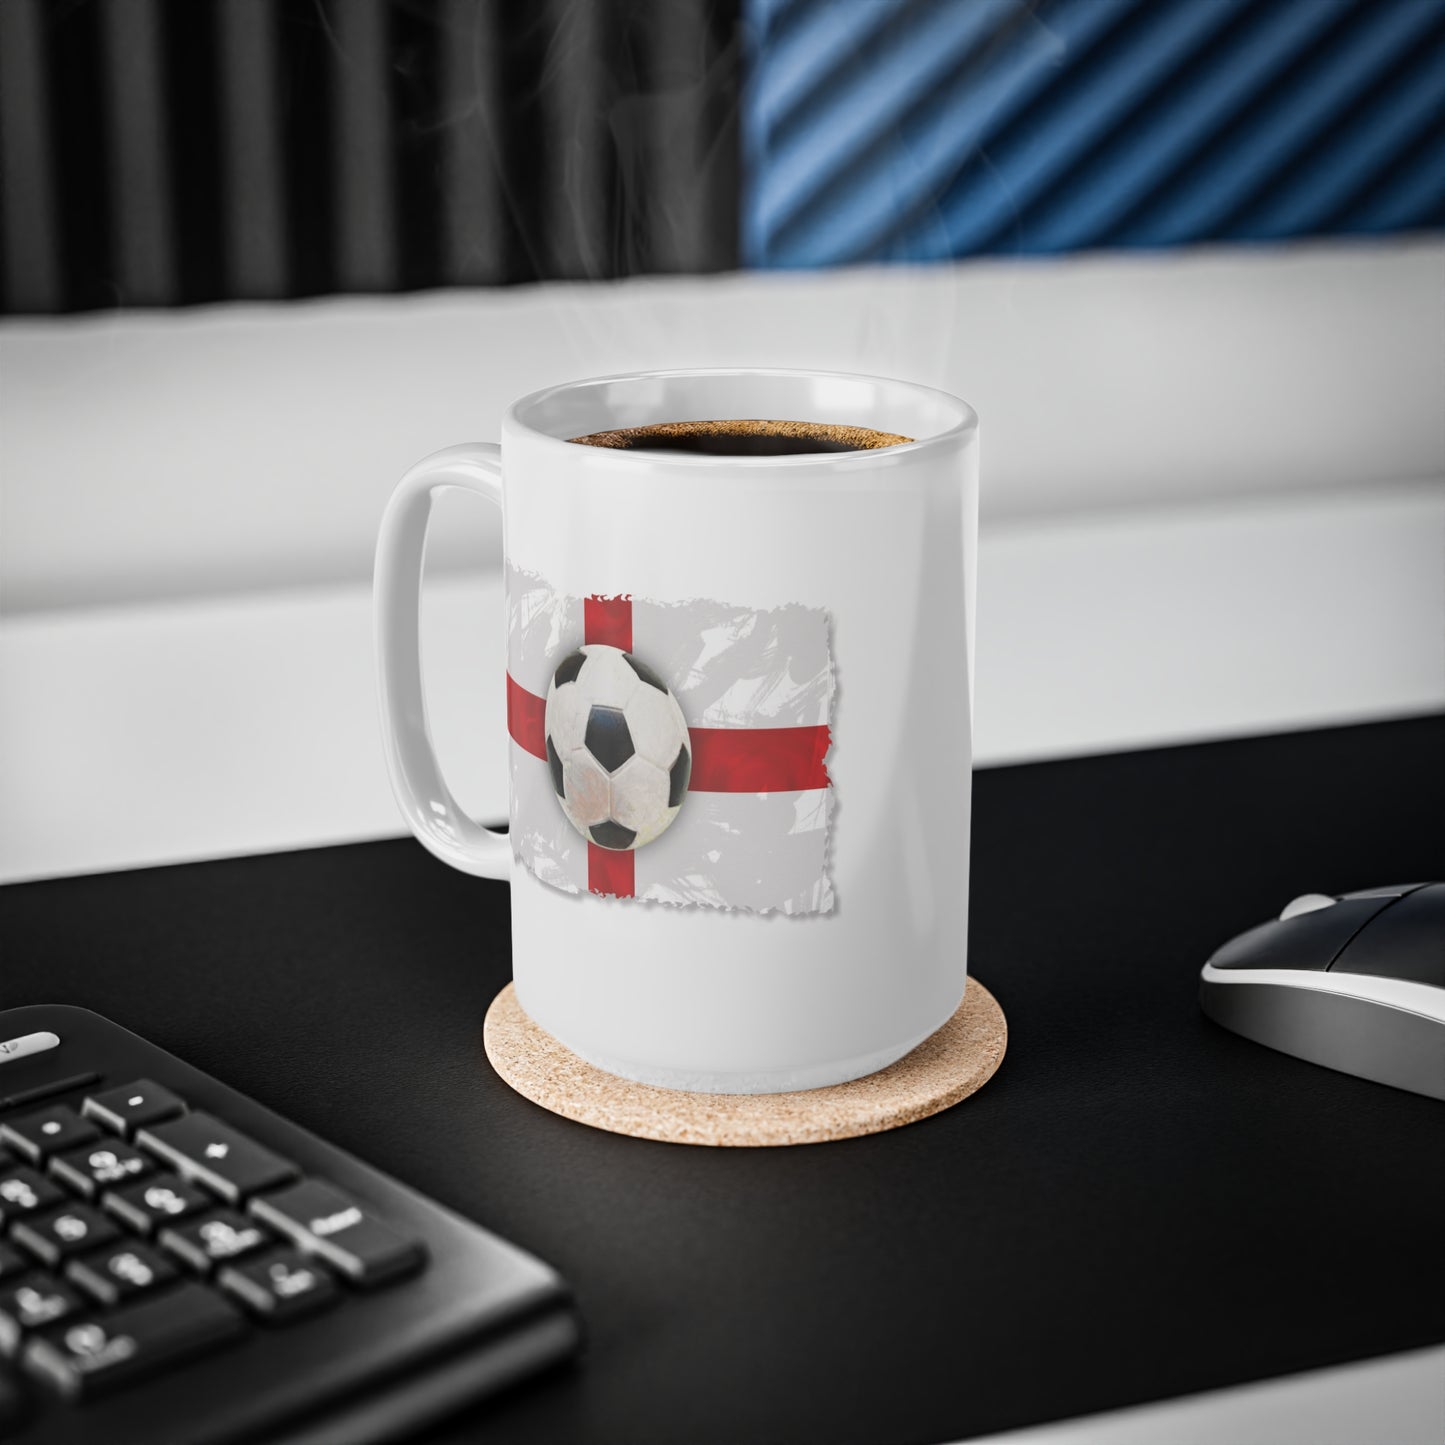 England Flag and Football Coffee Mug